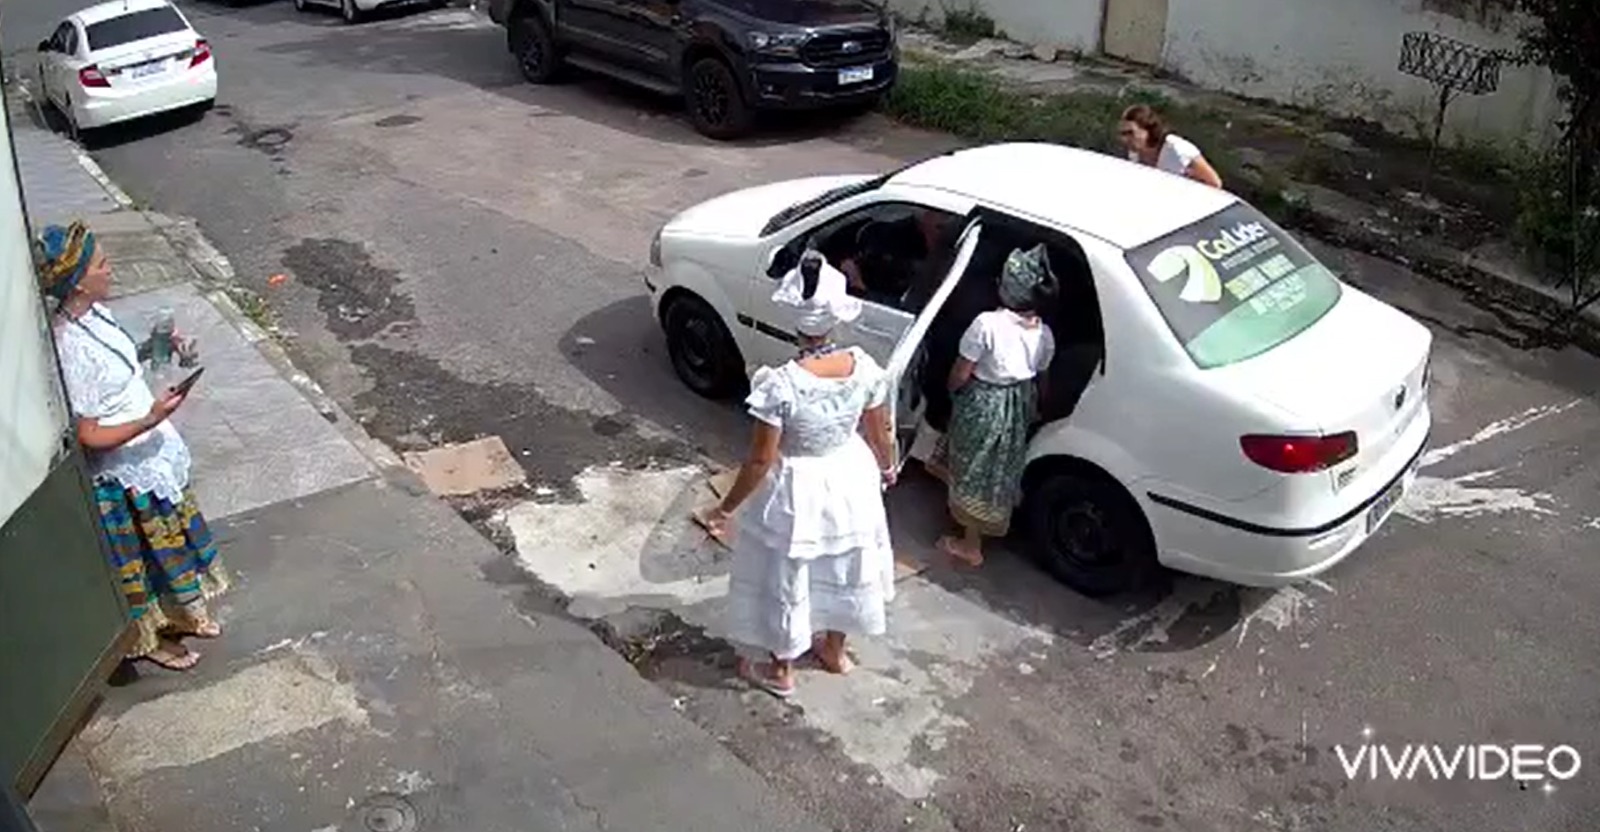 Família com roupa de candomblé denuncia motorista de aplicativo por preconceito religioso (Foto: Divulgação)